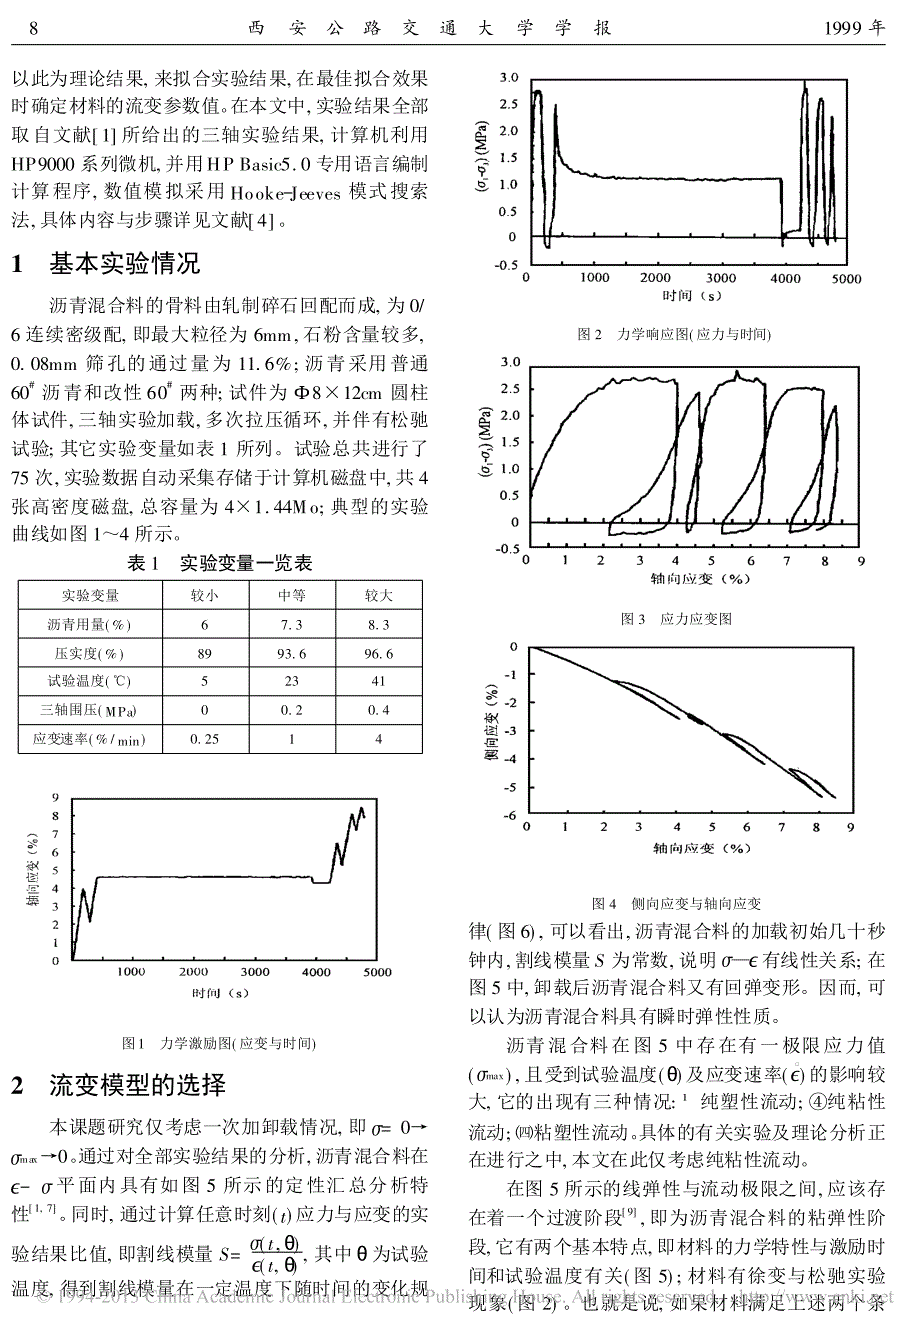 沥青混合料线性流变模型的数值模拟_延西利_第2页